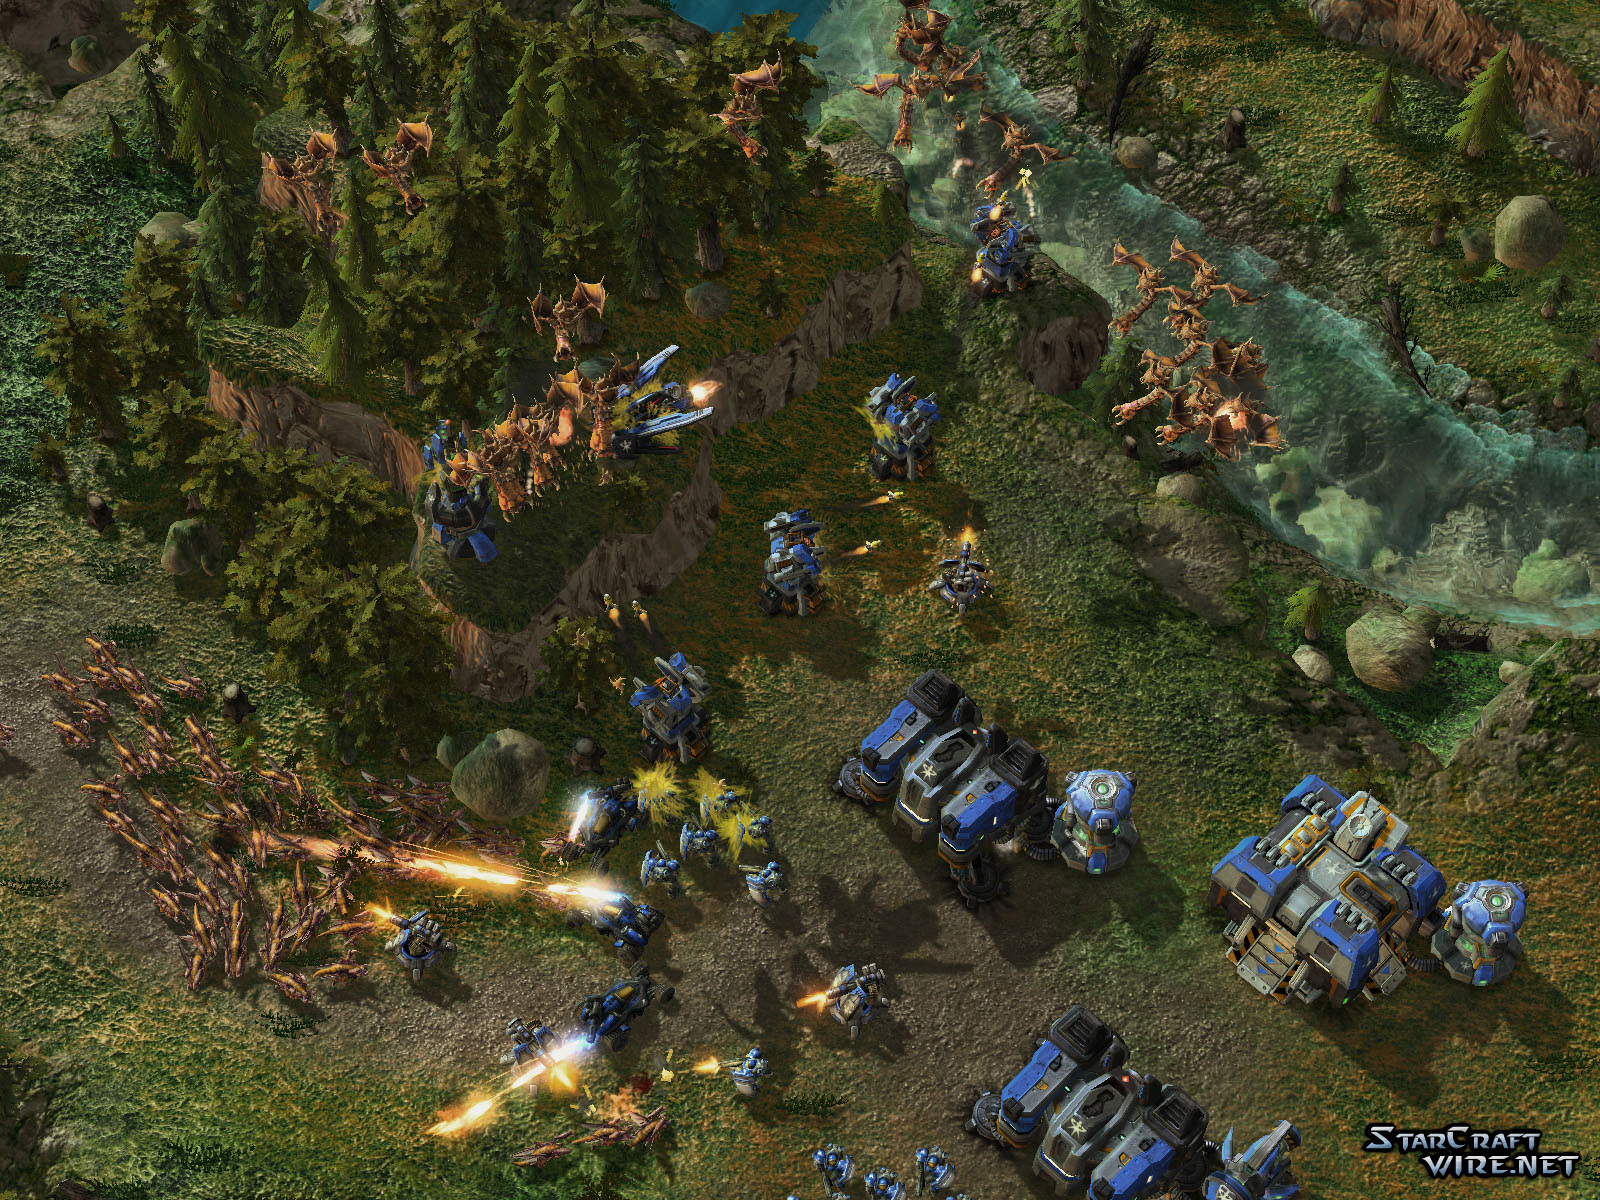 Immagine pubblicata in relazione al seguente contenuto: Blizzard, 8 nuovi screenshots di StarCraft II in single player | Nome immagine: news9522_1.jpg